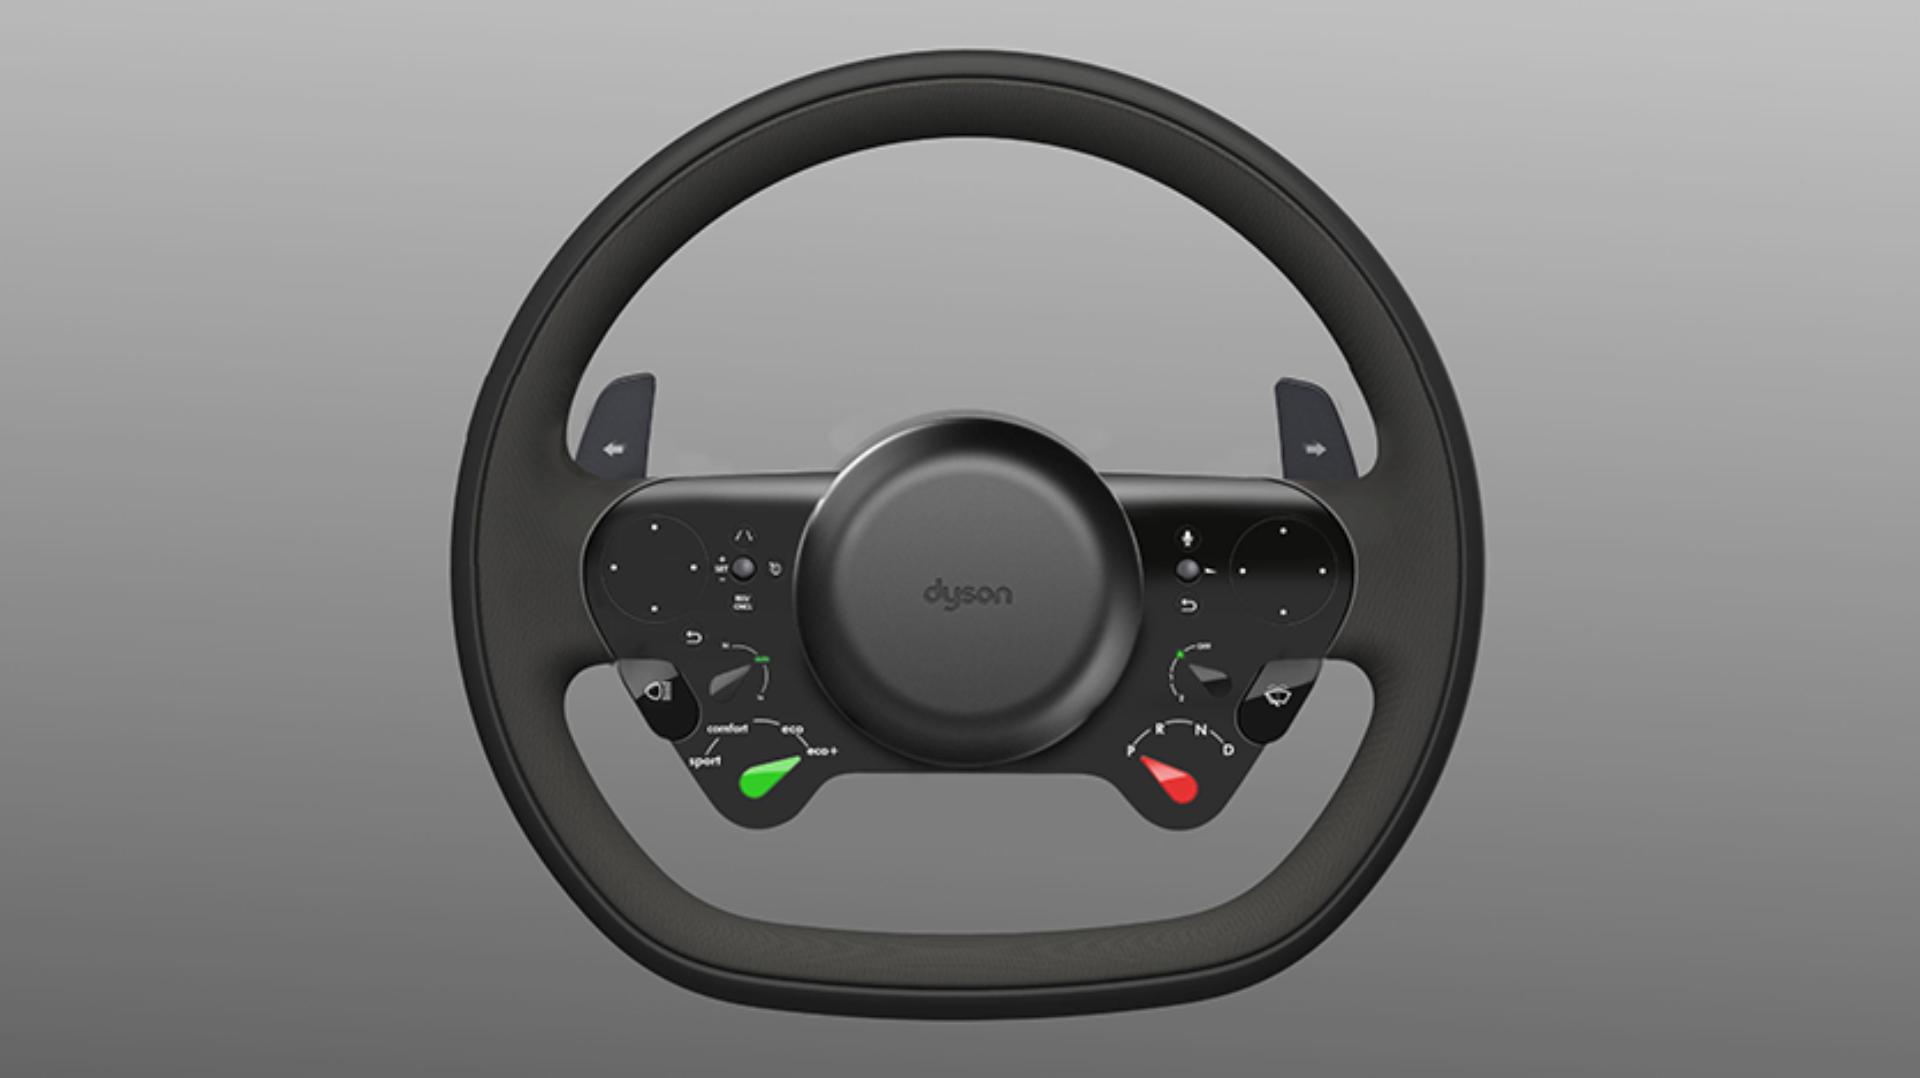 The steering wheel